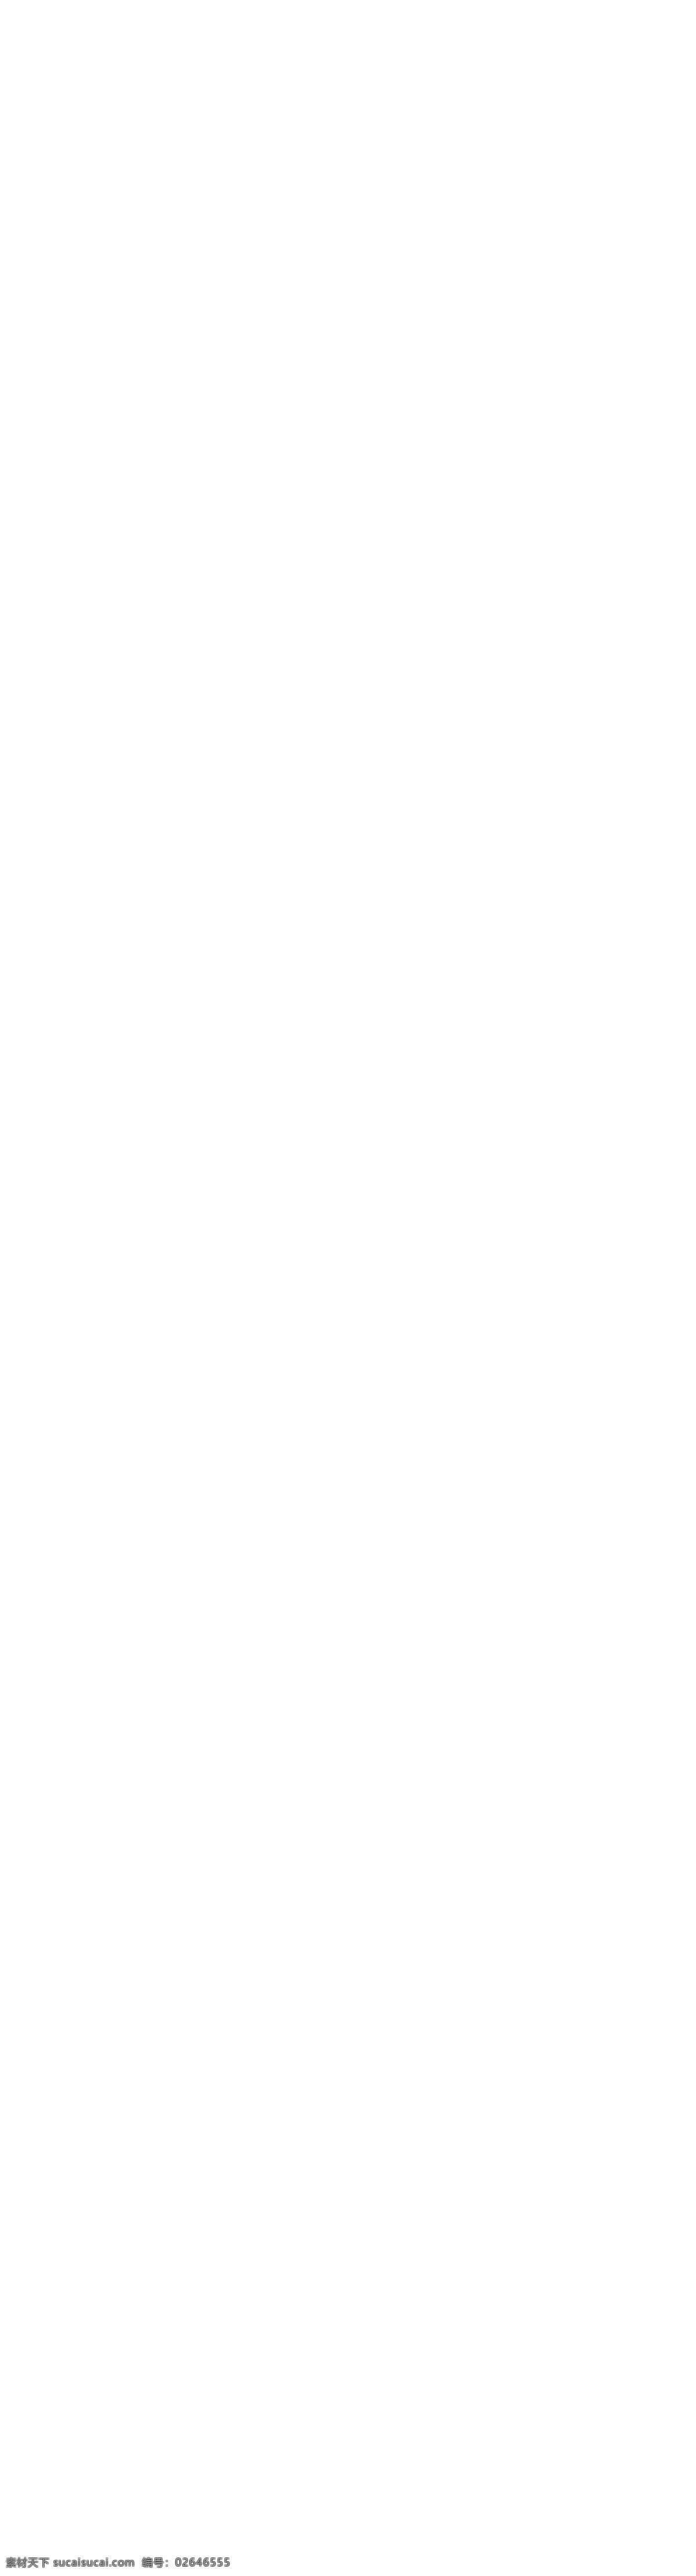 淘宝 模板 白云 导航 电器 家居 全网最低价 摄像头 数码 丝带 淘宝模板 游戏机 数码专营店 无线电力猫 游戏盒子 智能 淘宝素材 淘宝店铺首页